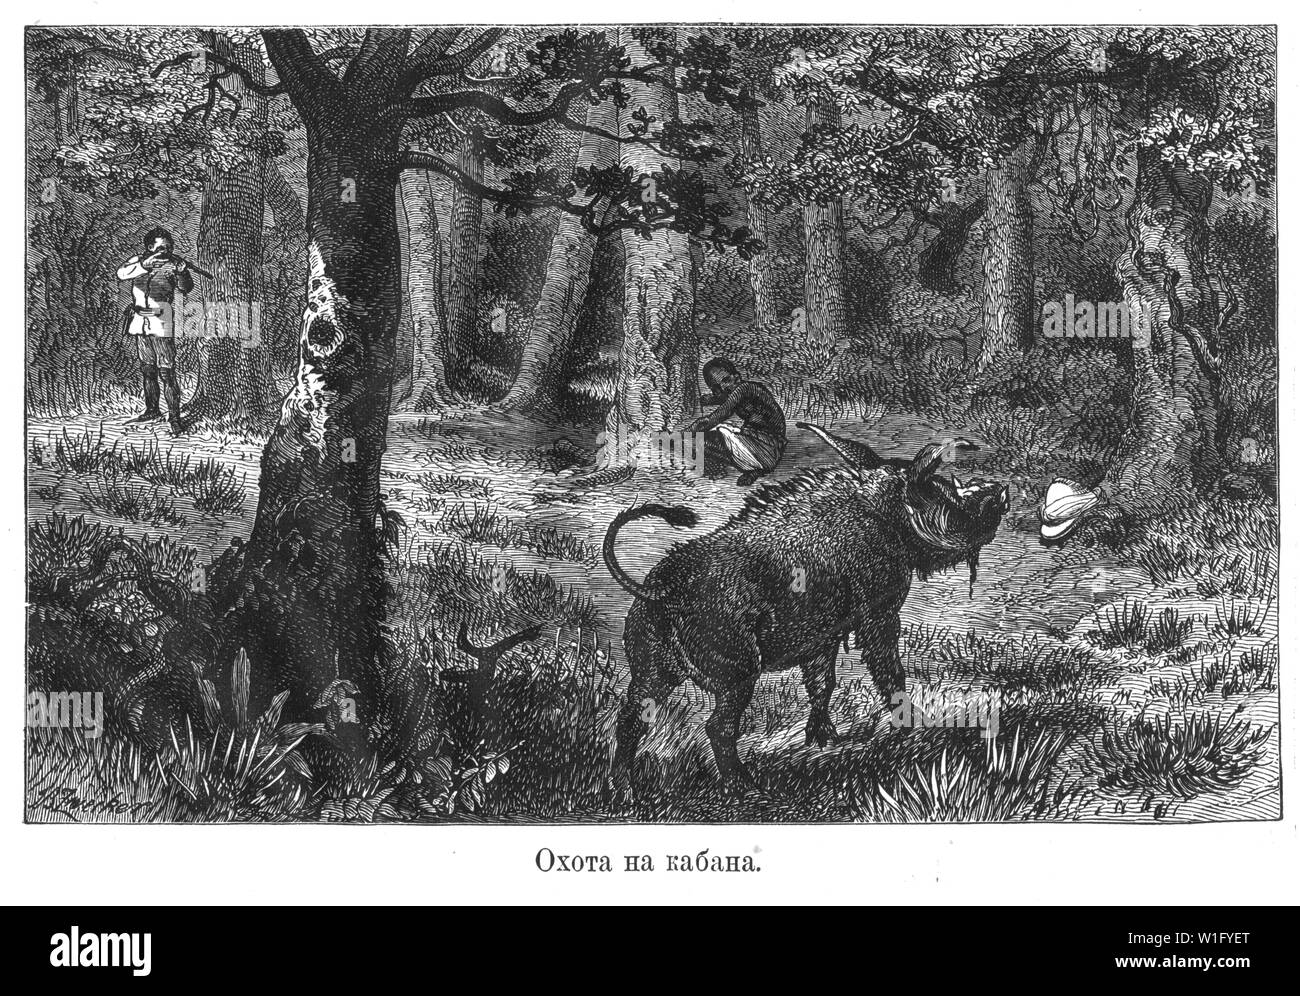 Afrikanische Arten der Jagd auf das Wildschwein Abbildung aus dem Buch von Henry Morton Stanley, wie ich Livingstone fand. Russland, 1873 Stockfoto